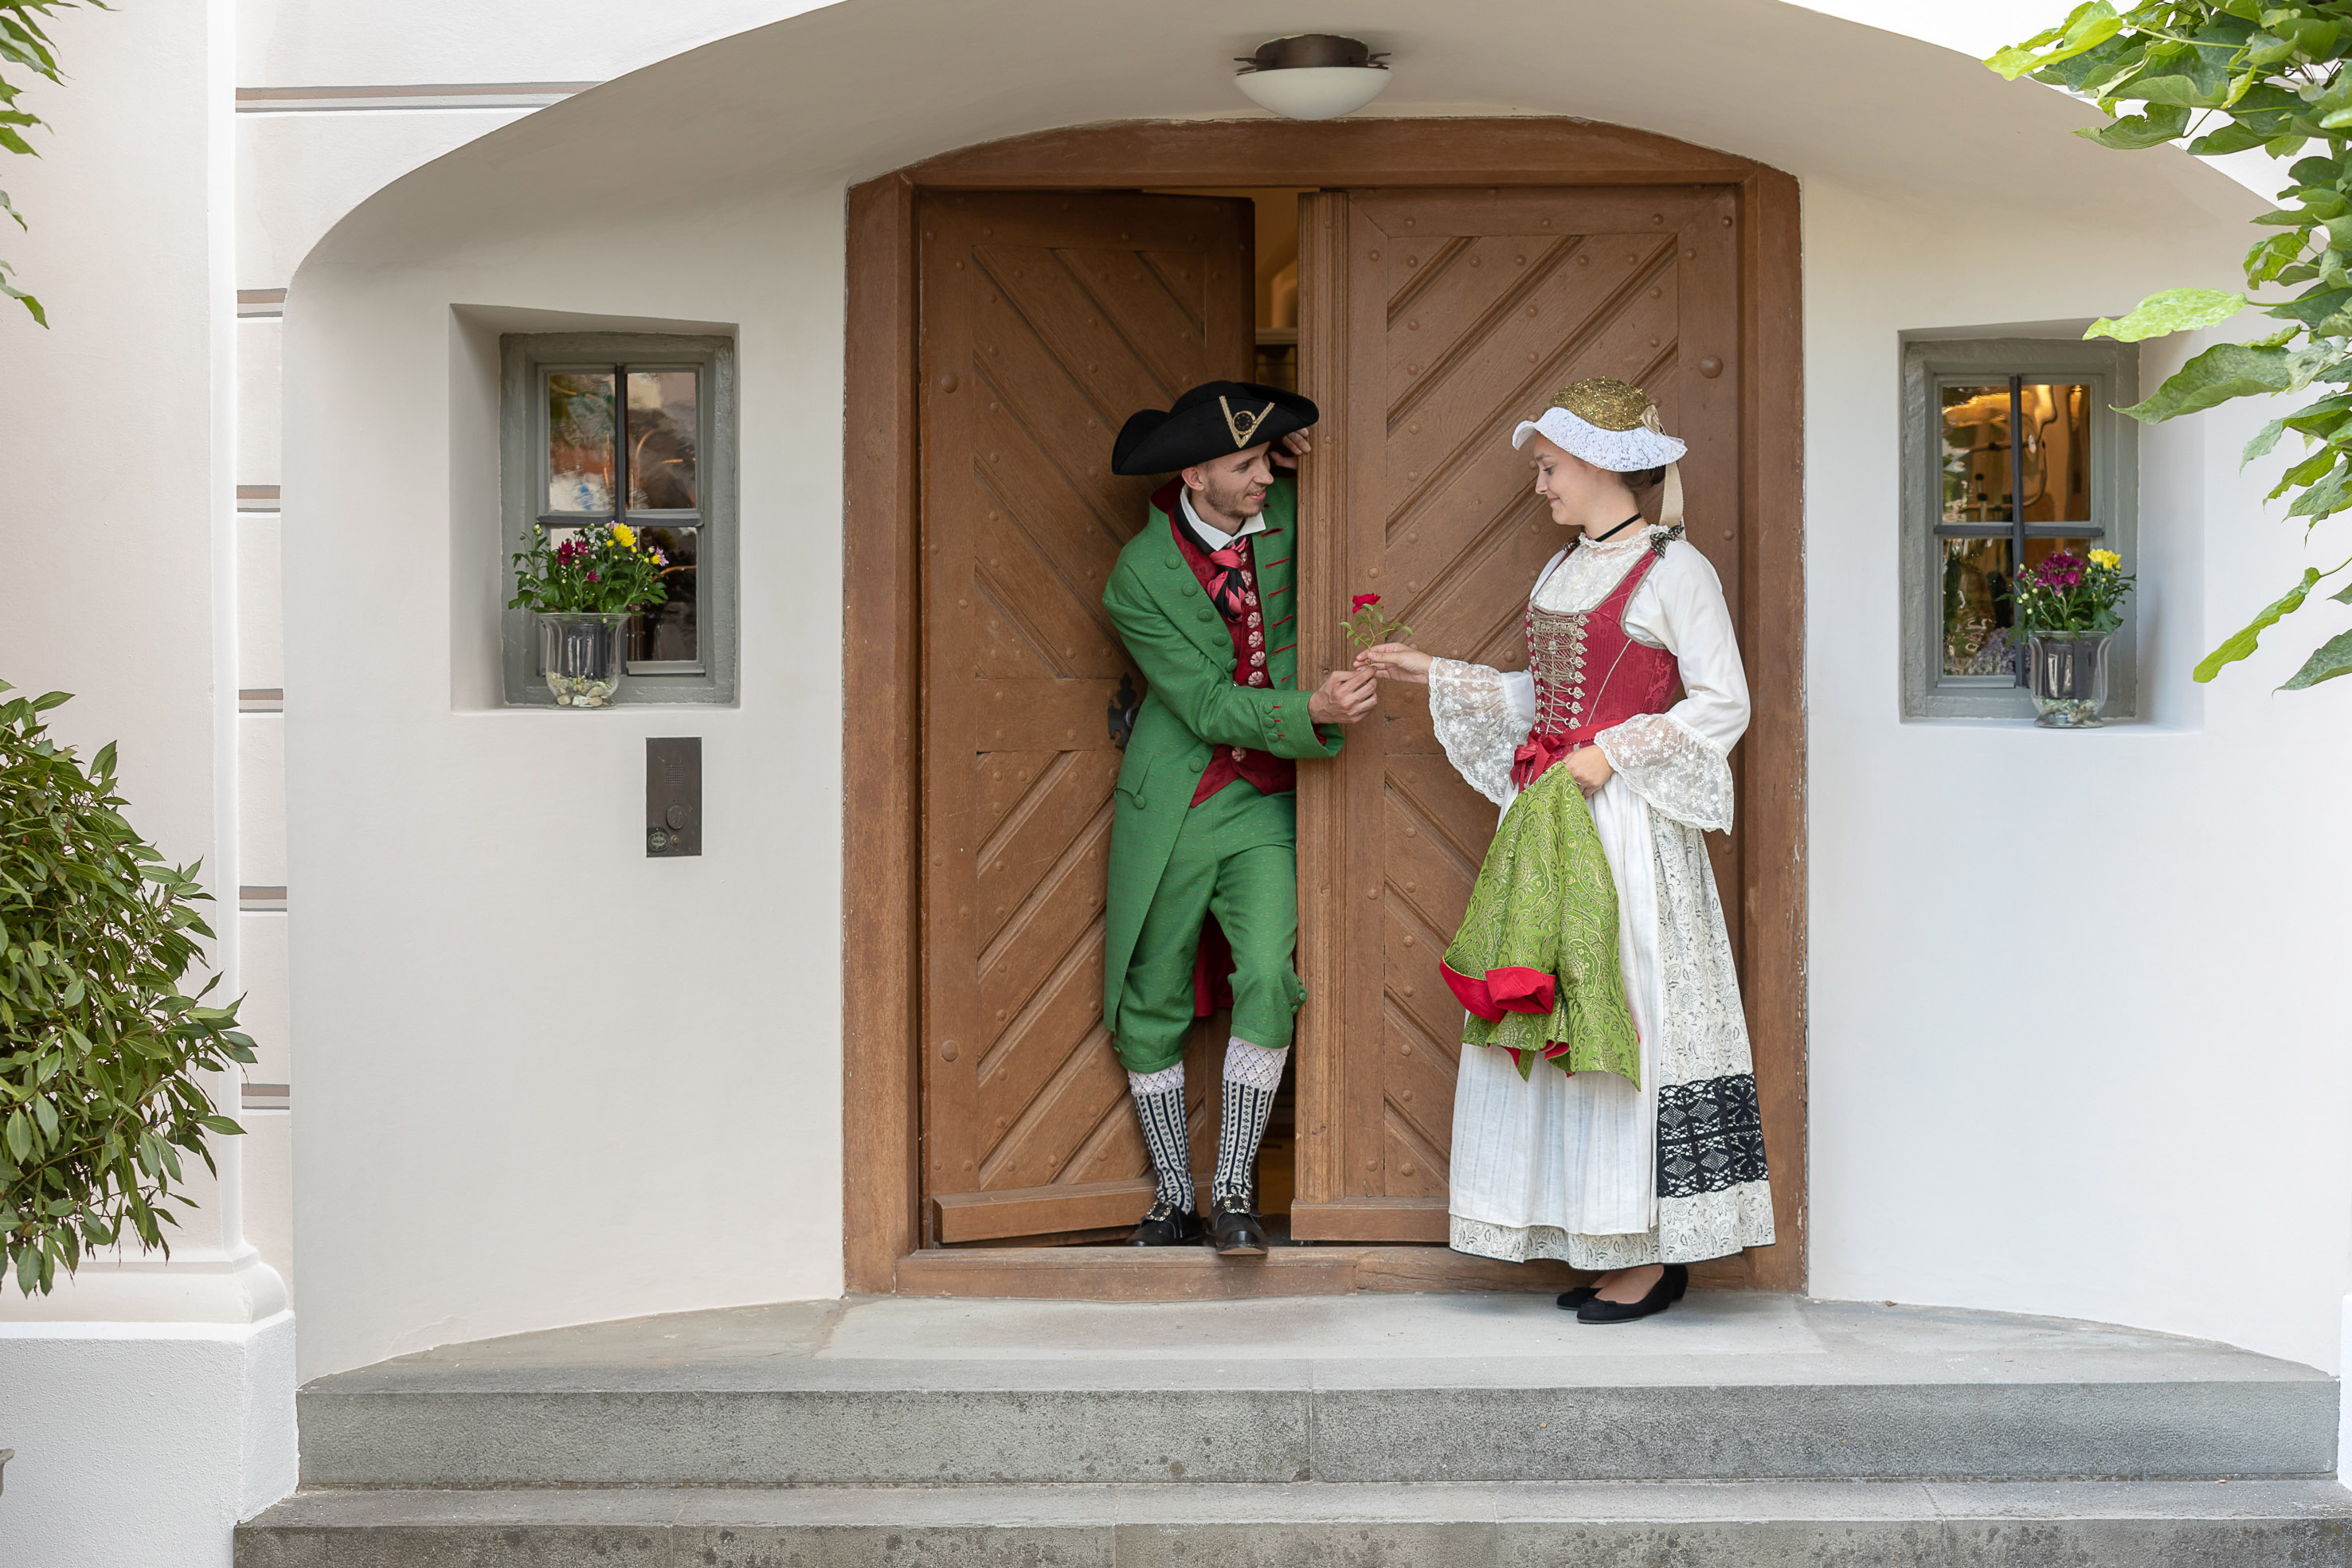 Wir freuen uns über viele Besucher zu unserem Jubiläum im historischen Landauer-Haus - und besonders über viele Trachtenträger!